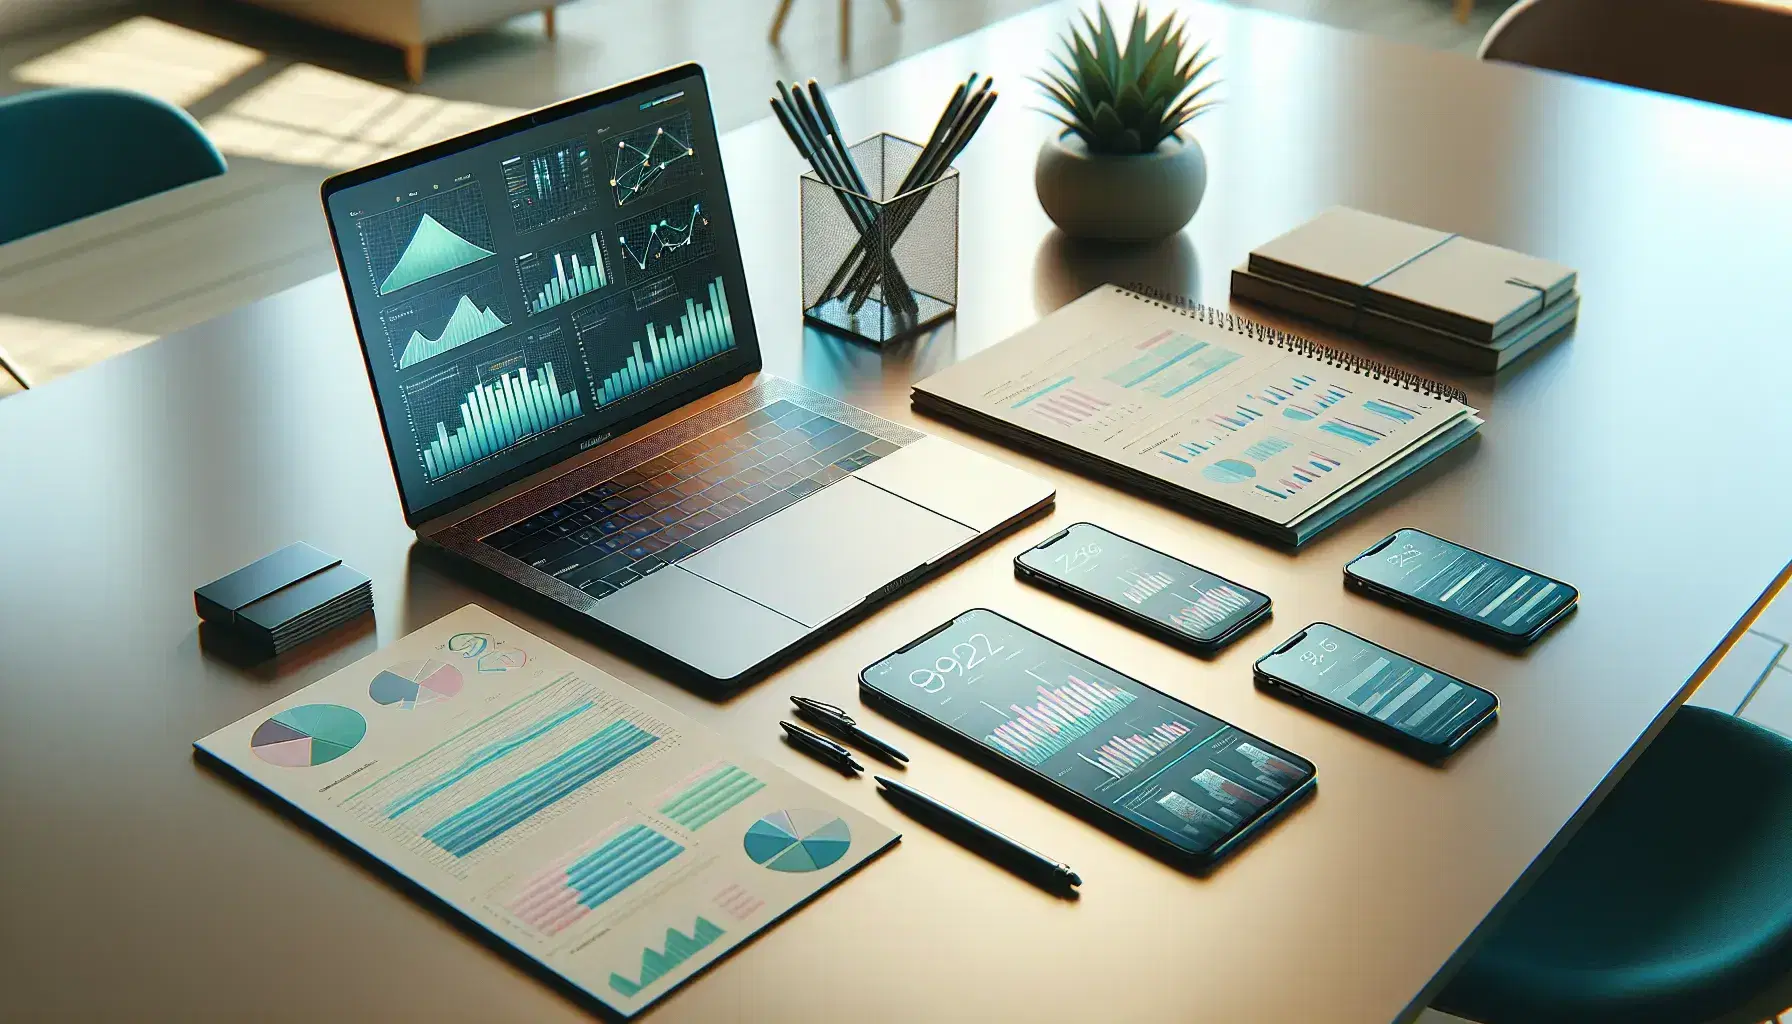 Mesa de oficina moderna con portátil abierto mostrando gráficos, tablet con diagramas, smartphone y documentos encuadernados, en un espacio iluminado con planta verde.